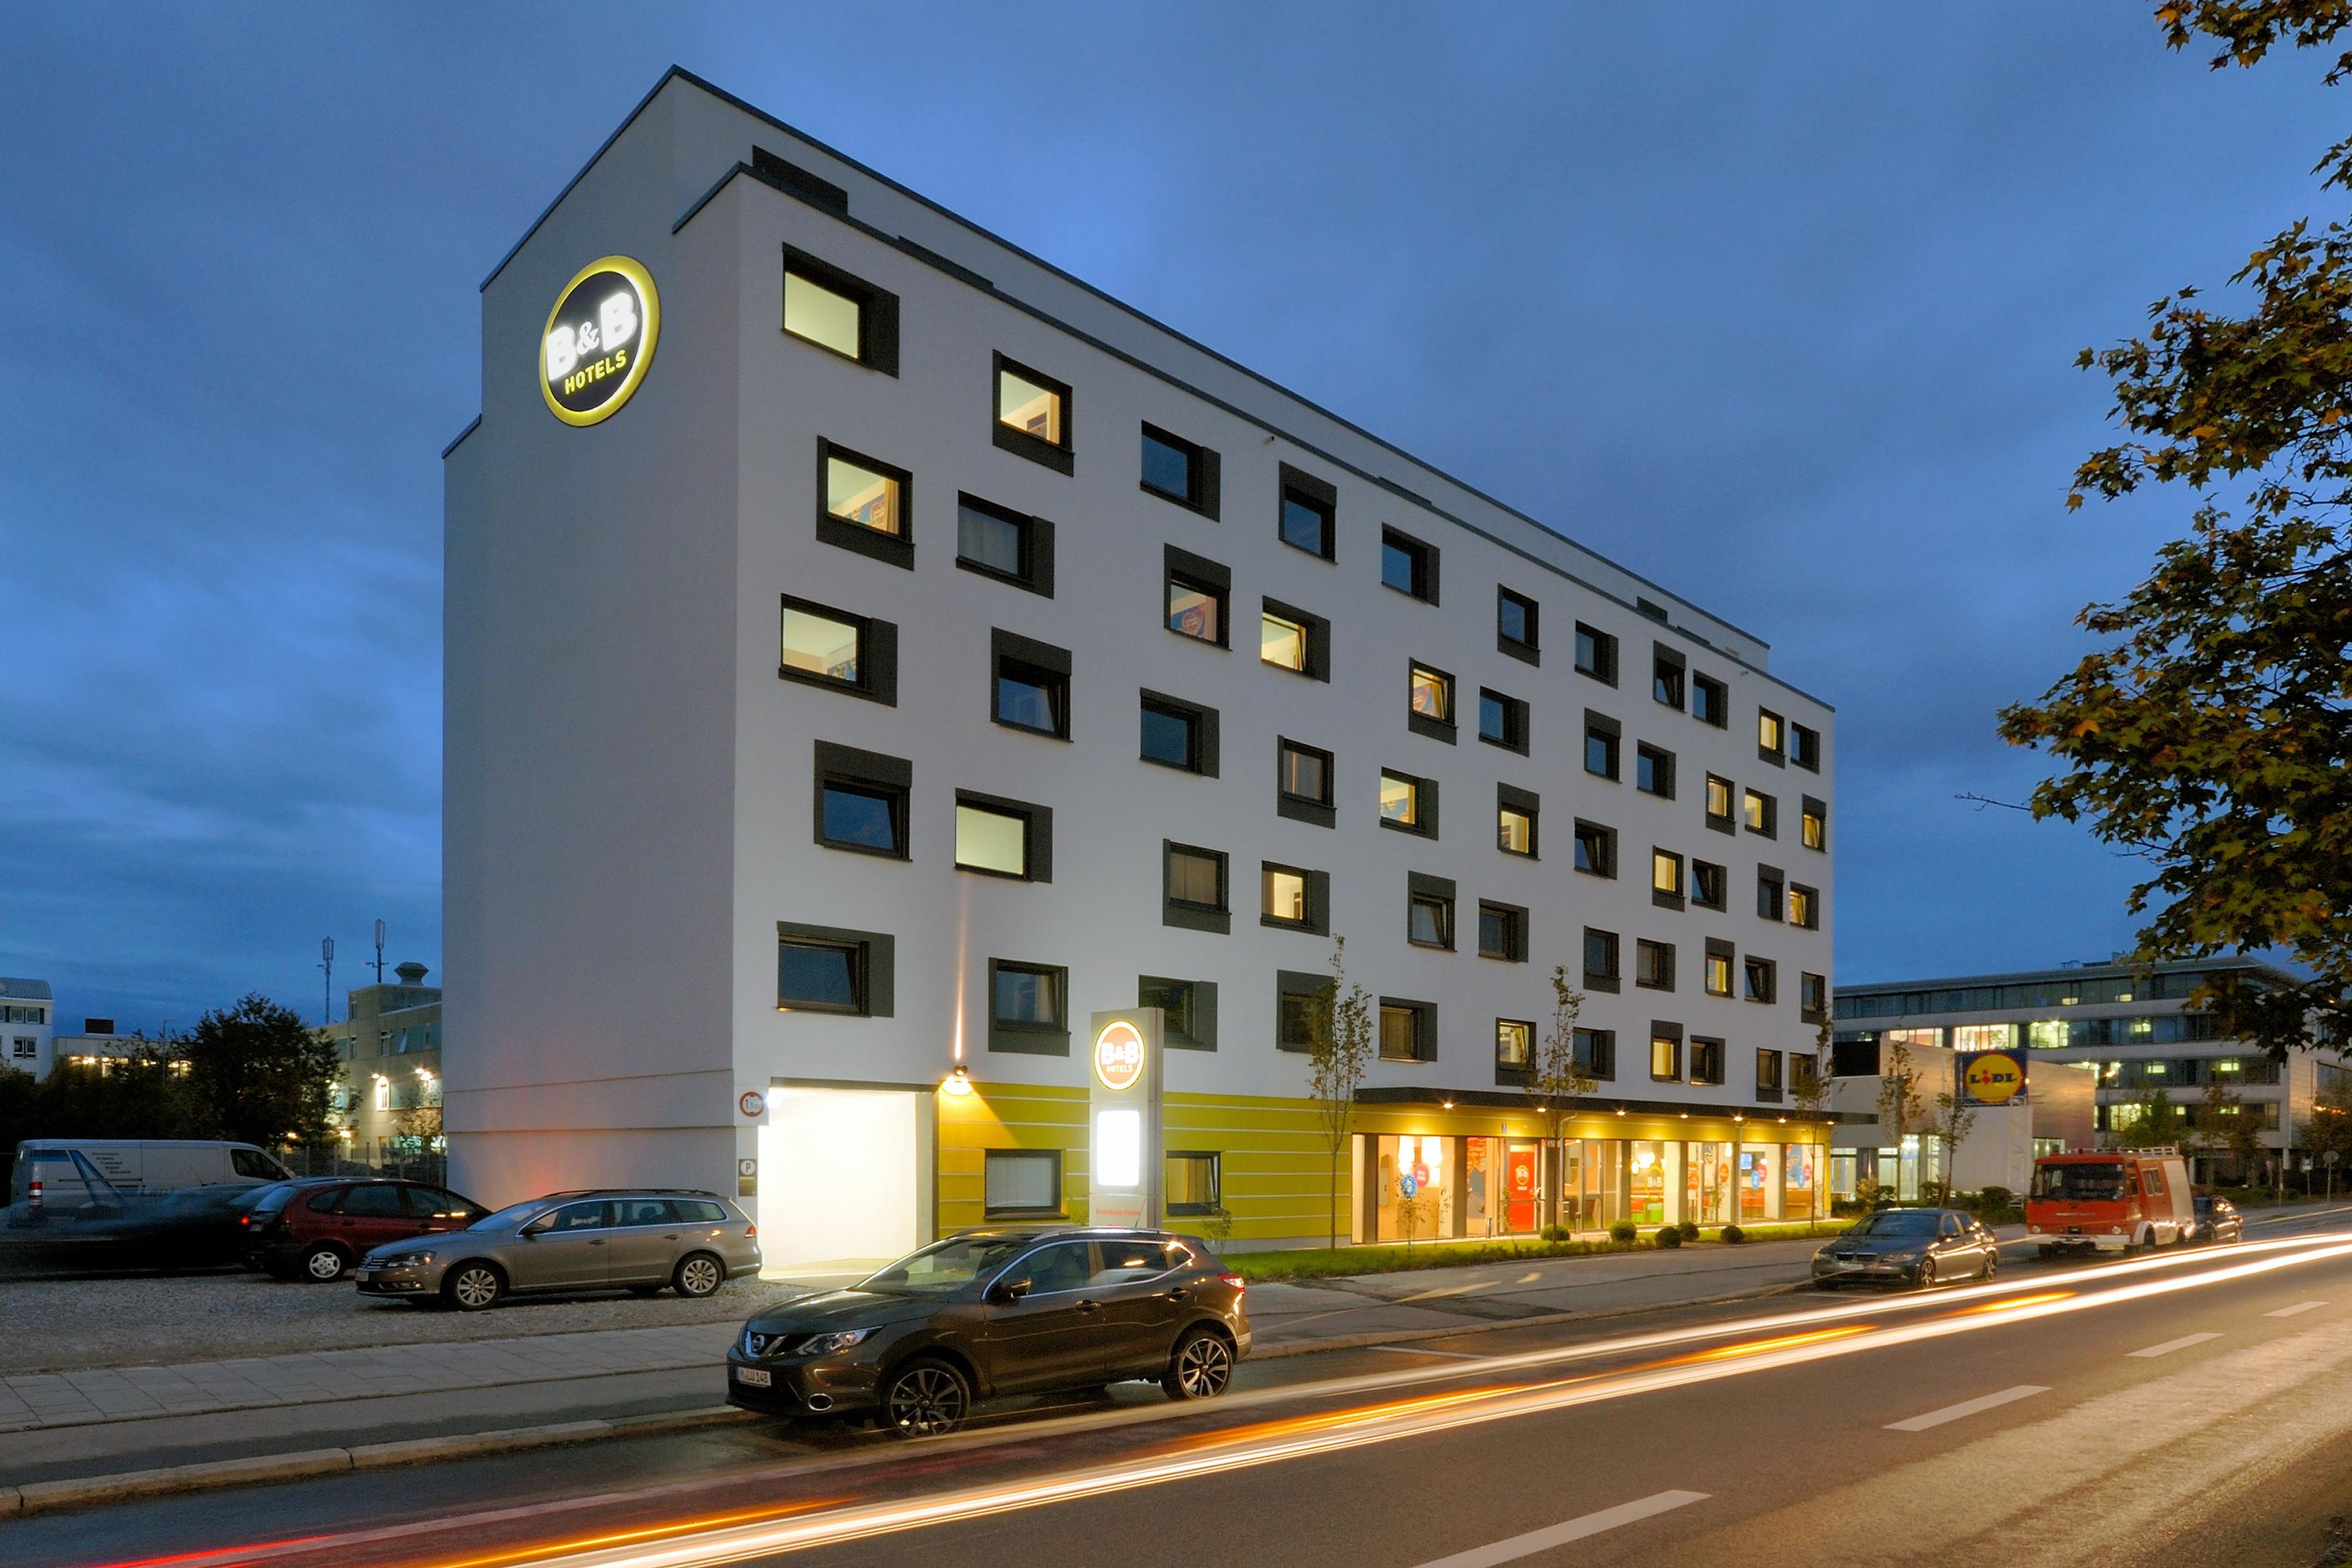 Bild 1 B&B Hotel München City-West in München